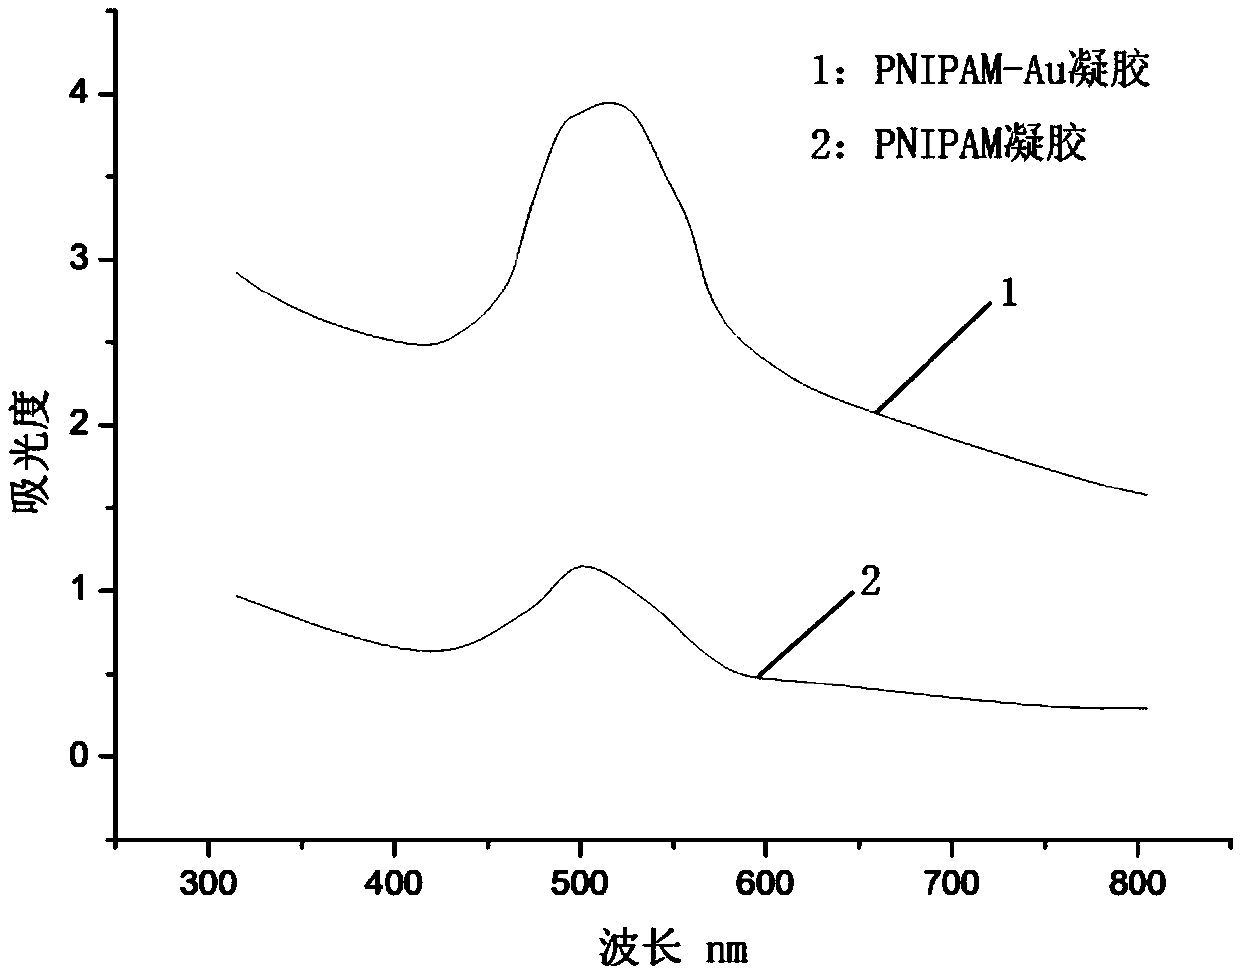 Antibiotic detection method based on molecular imprinting-Raman spectrum